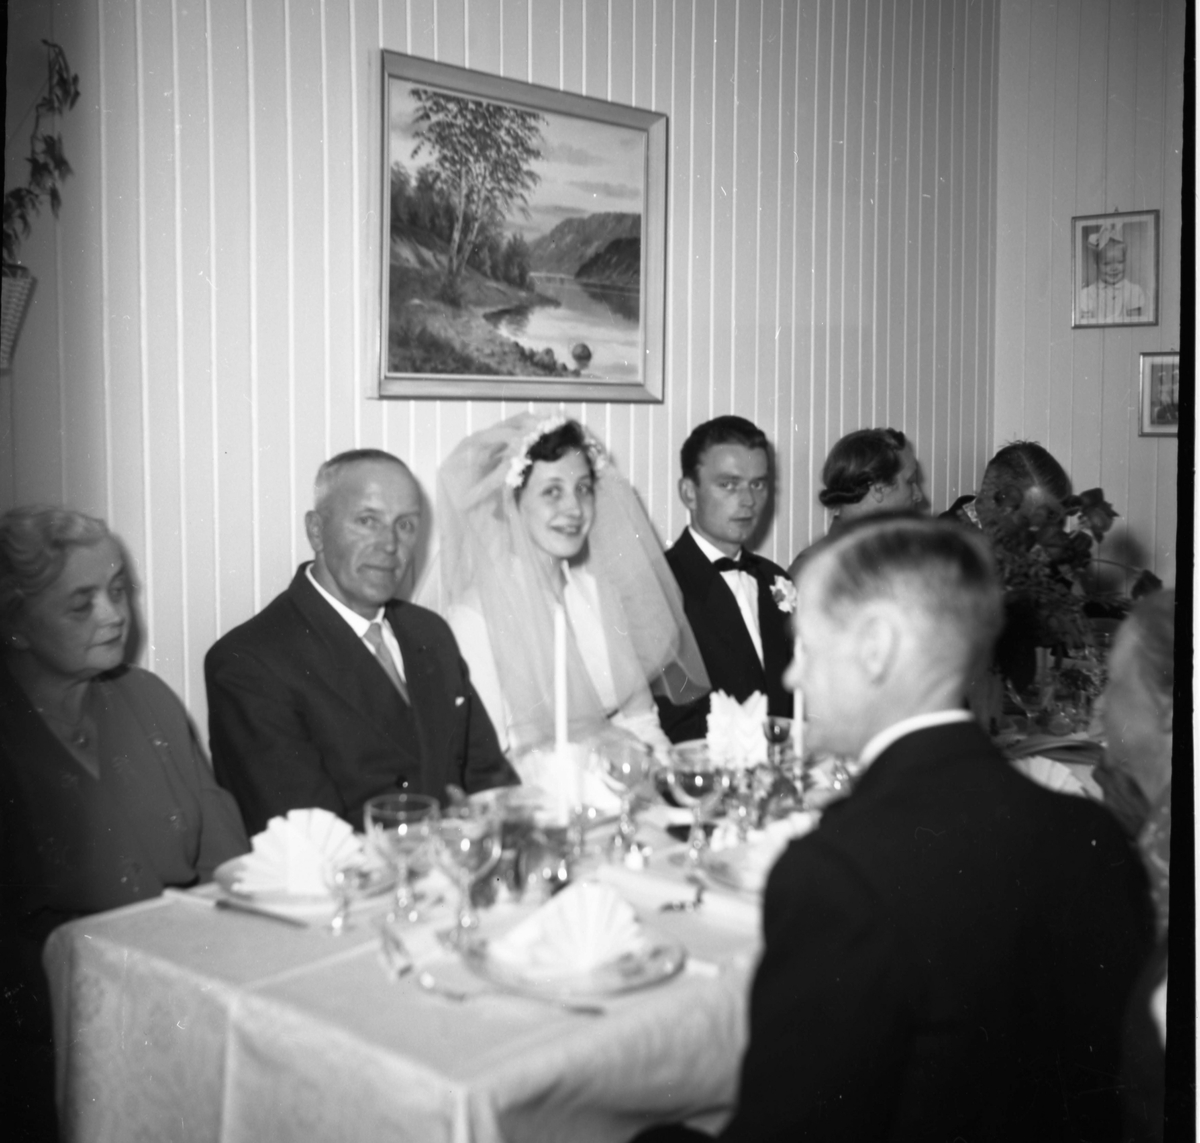 Bilde av penkledde gjester sittende til bords. Bryllupsfest. Brudeparet sees i midten av bildet.